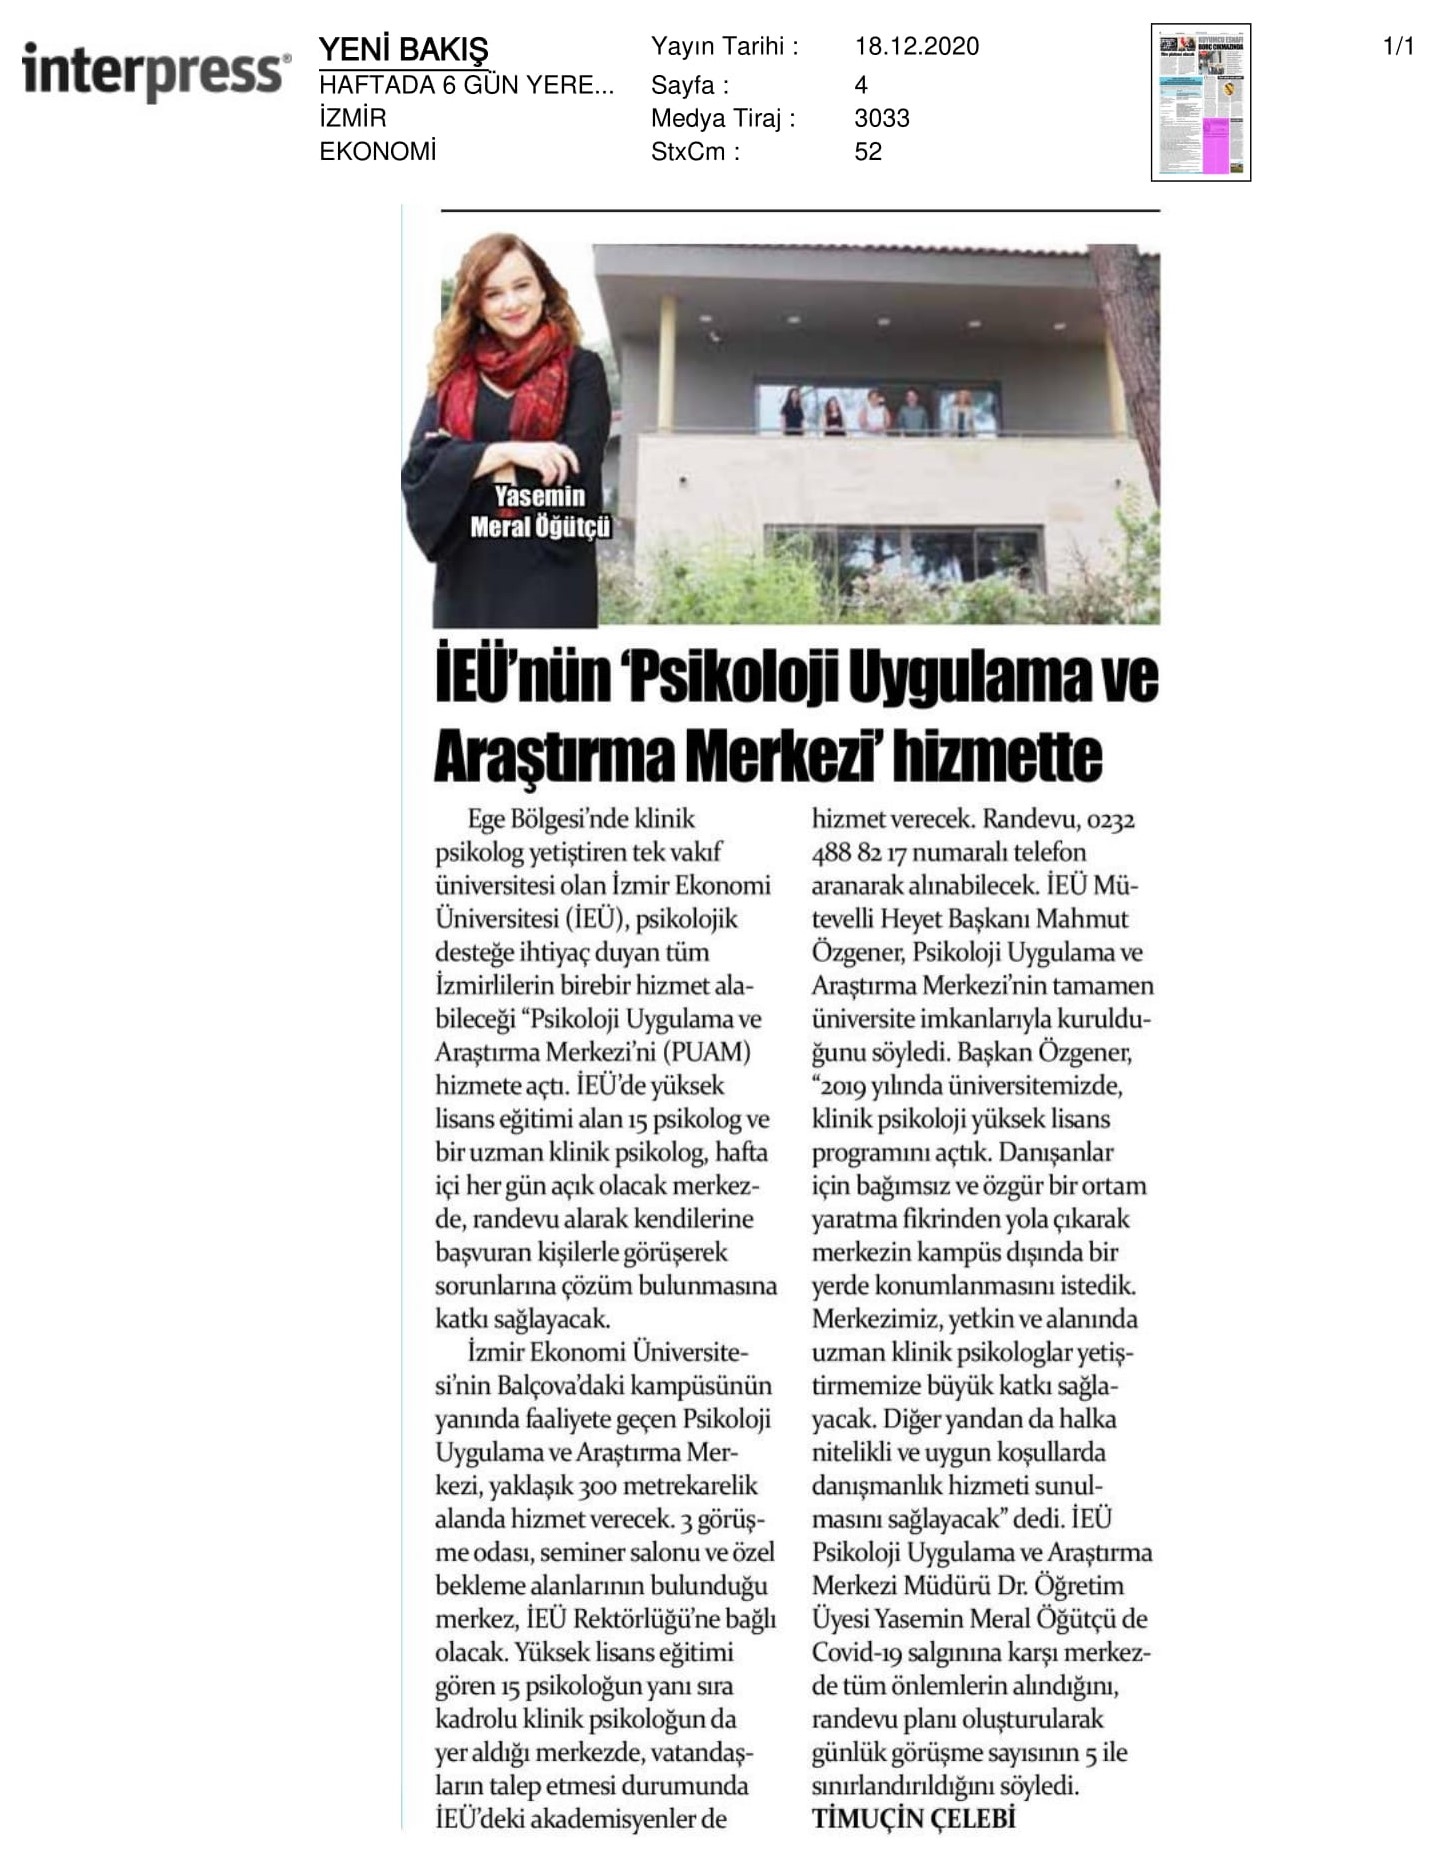 İzmir Ekonomi’den ‘psikolojik’ merkez